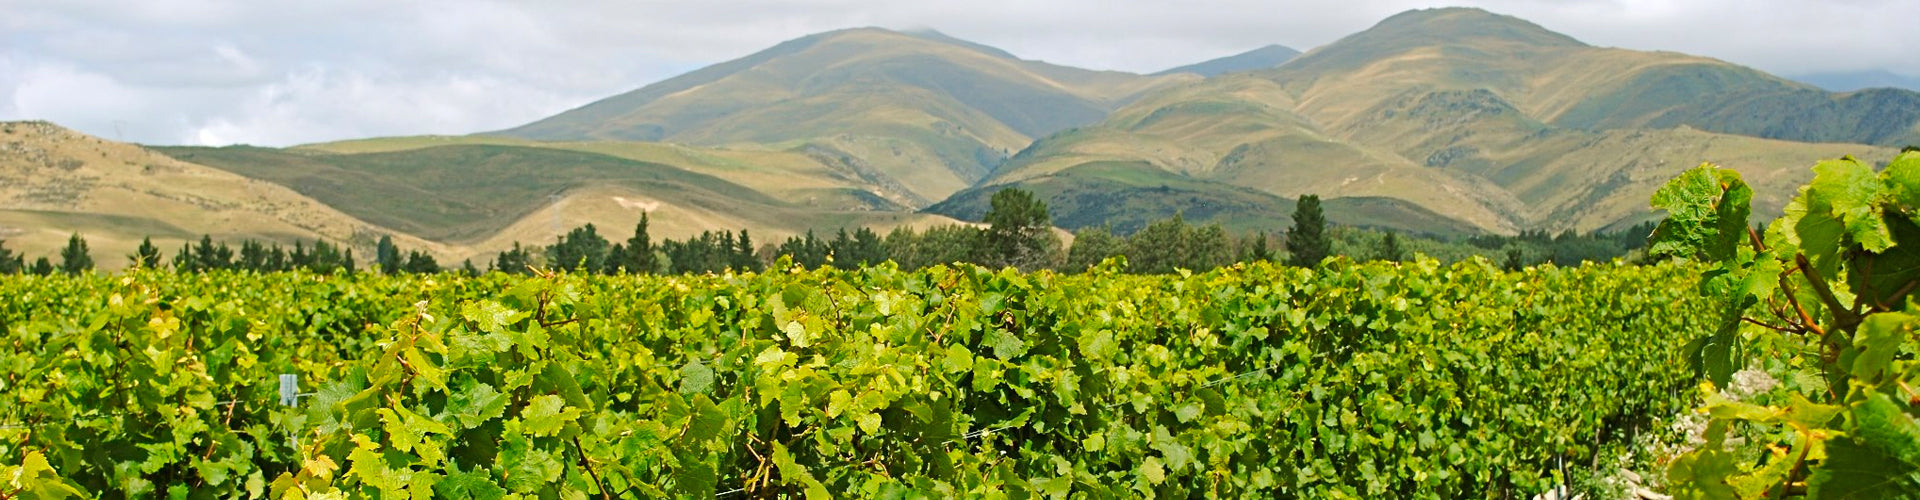 Valli Vineyards in Central Otago, New Zealand